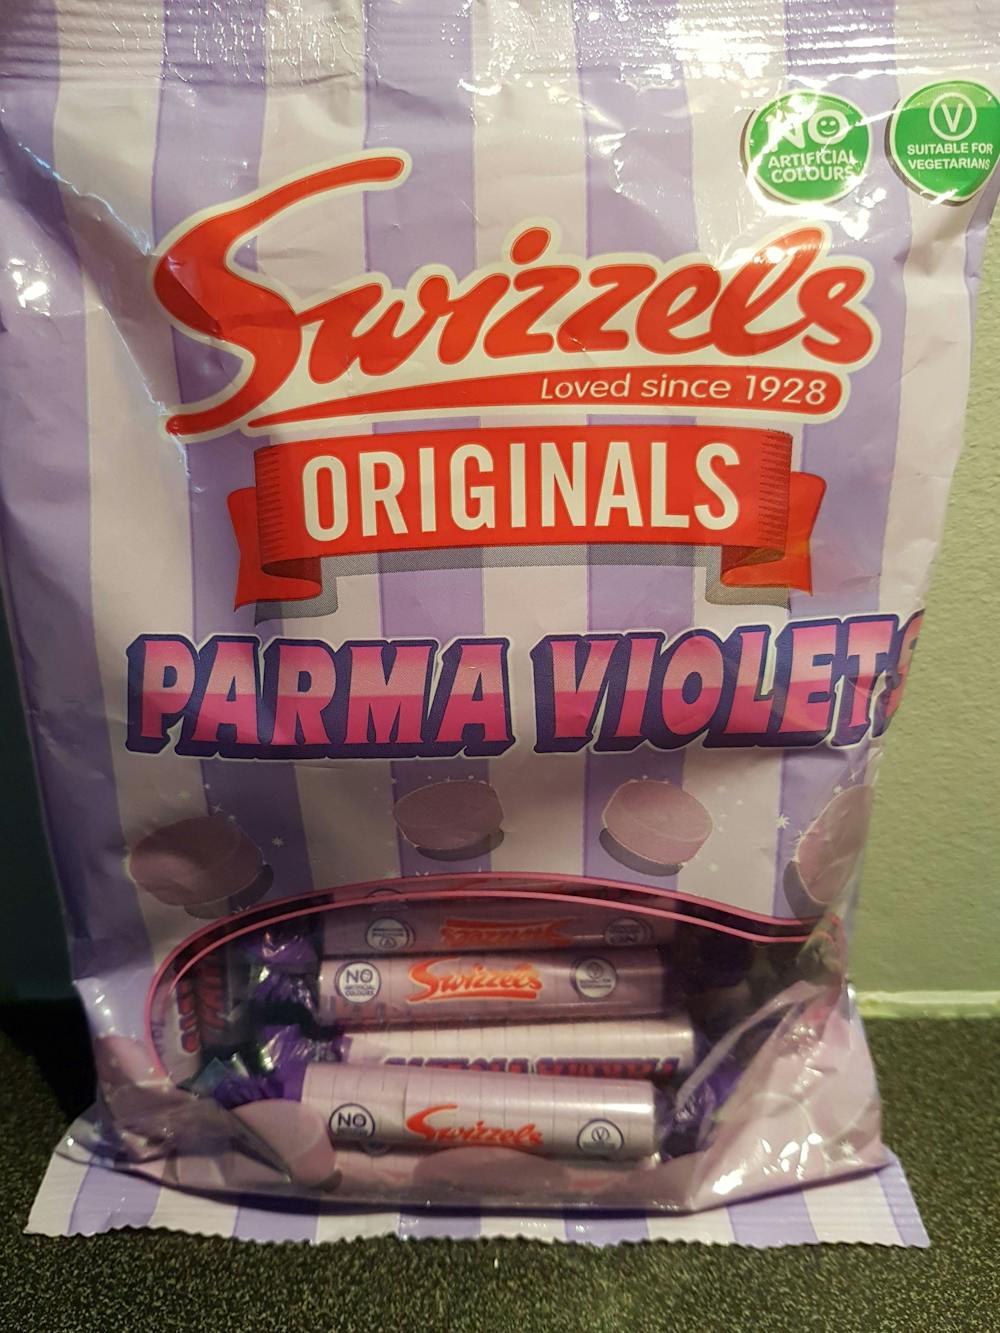 Parma violet, Swizzels